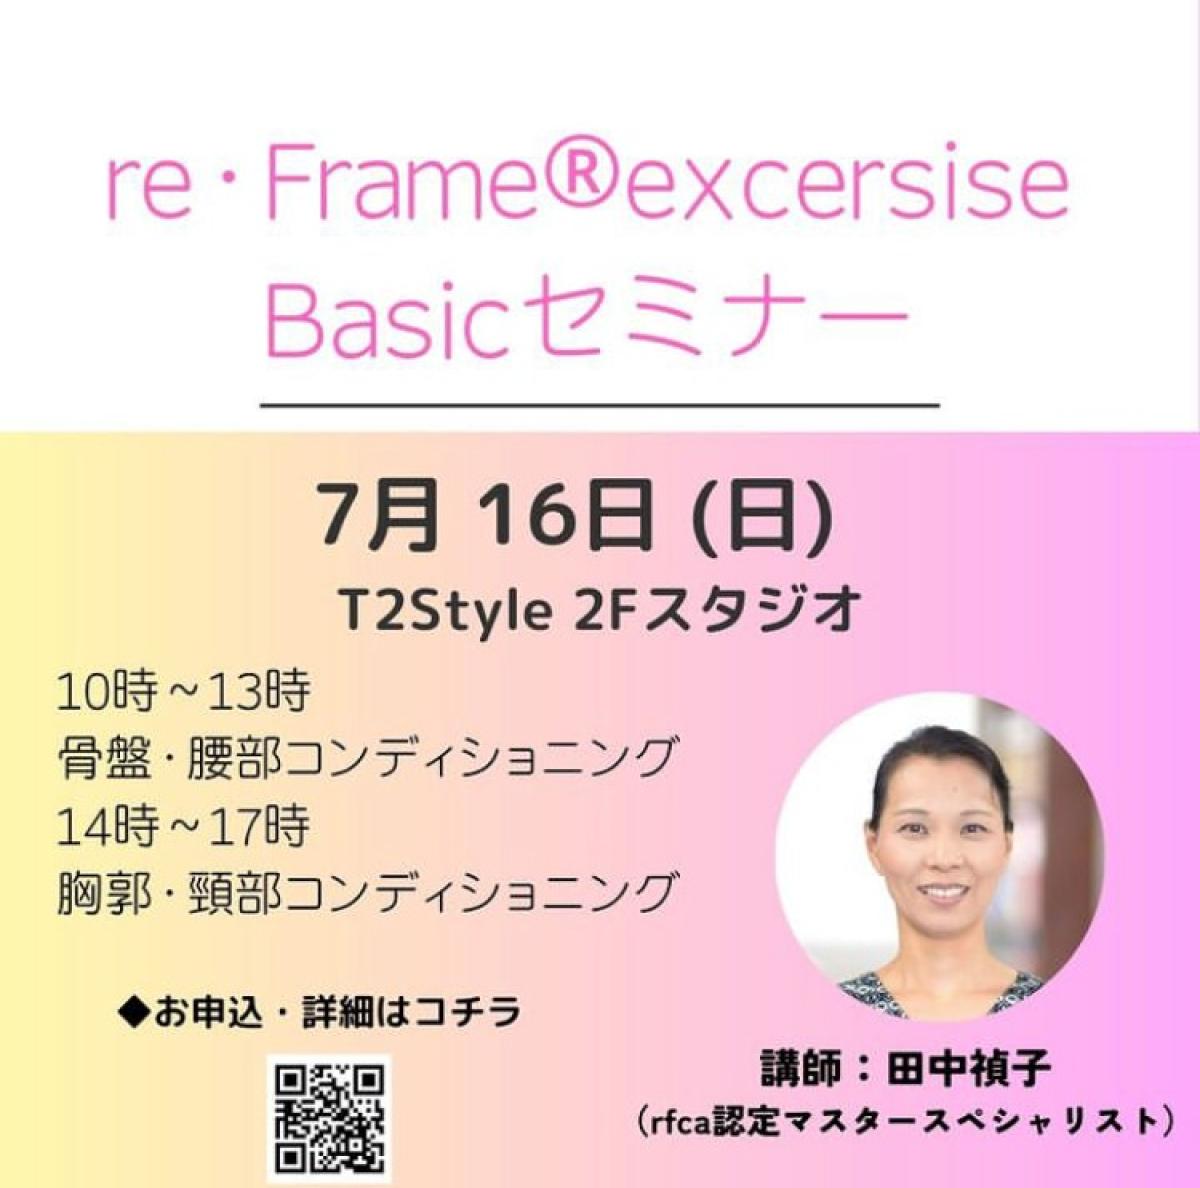 7月16日に田中禎子さんがエクササイズセミナーを開催されます！【栄養コンシェルジュ取得後のご活躍】